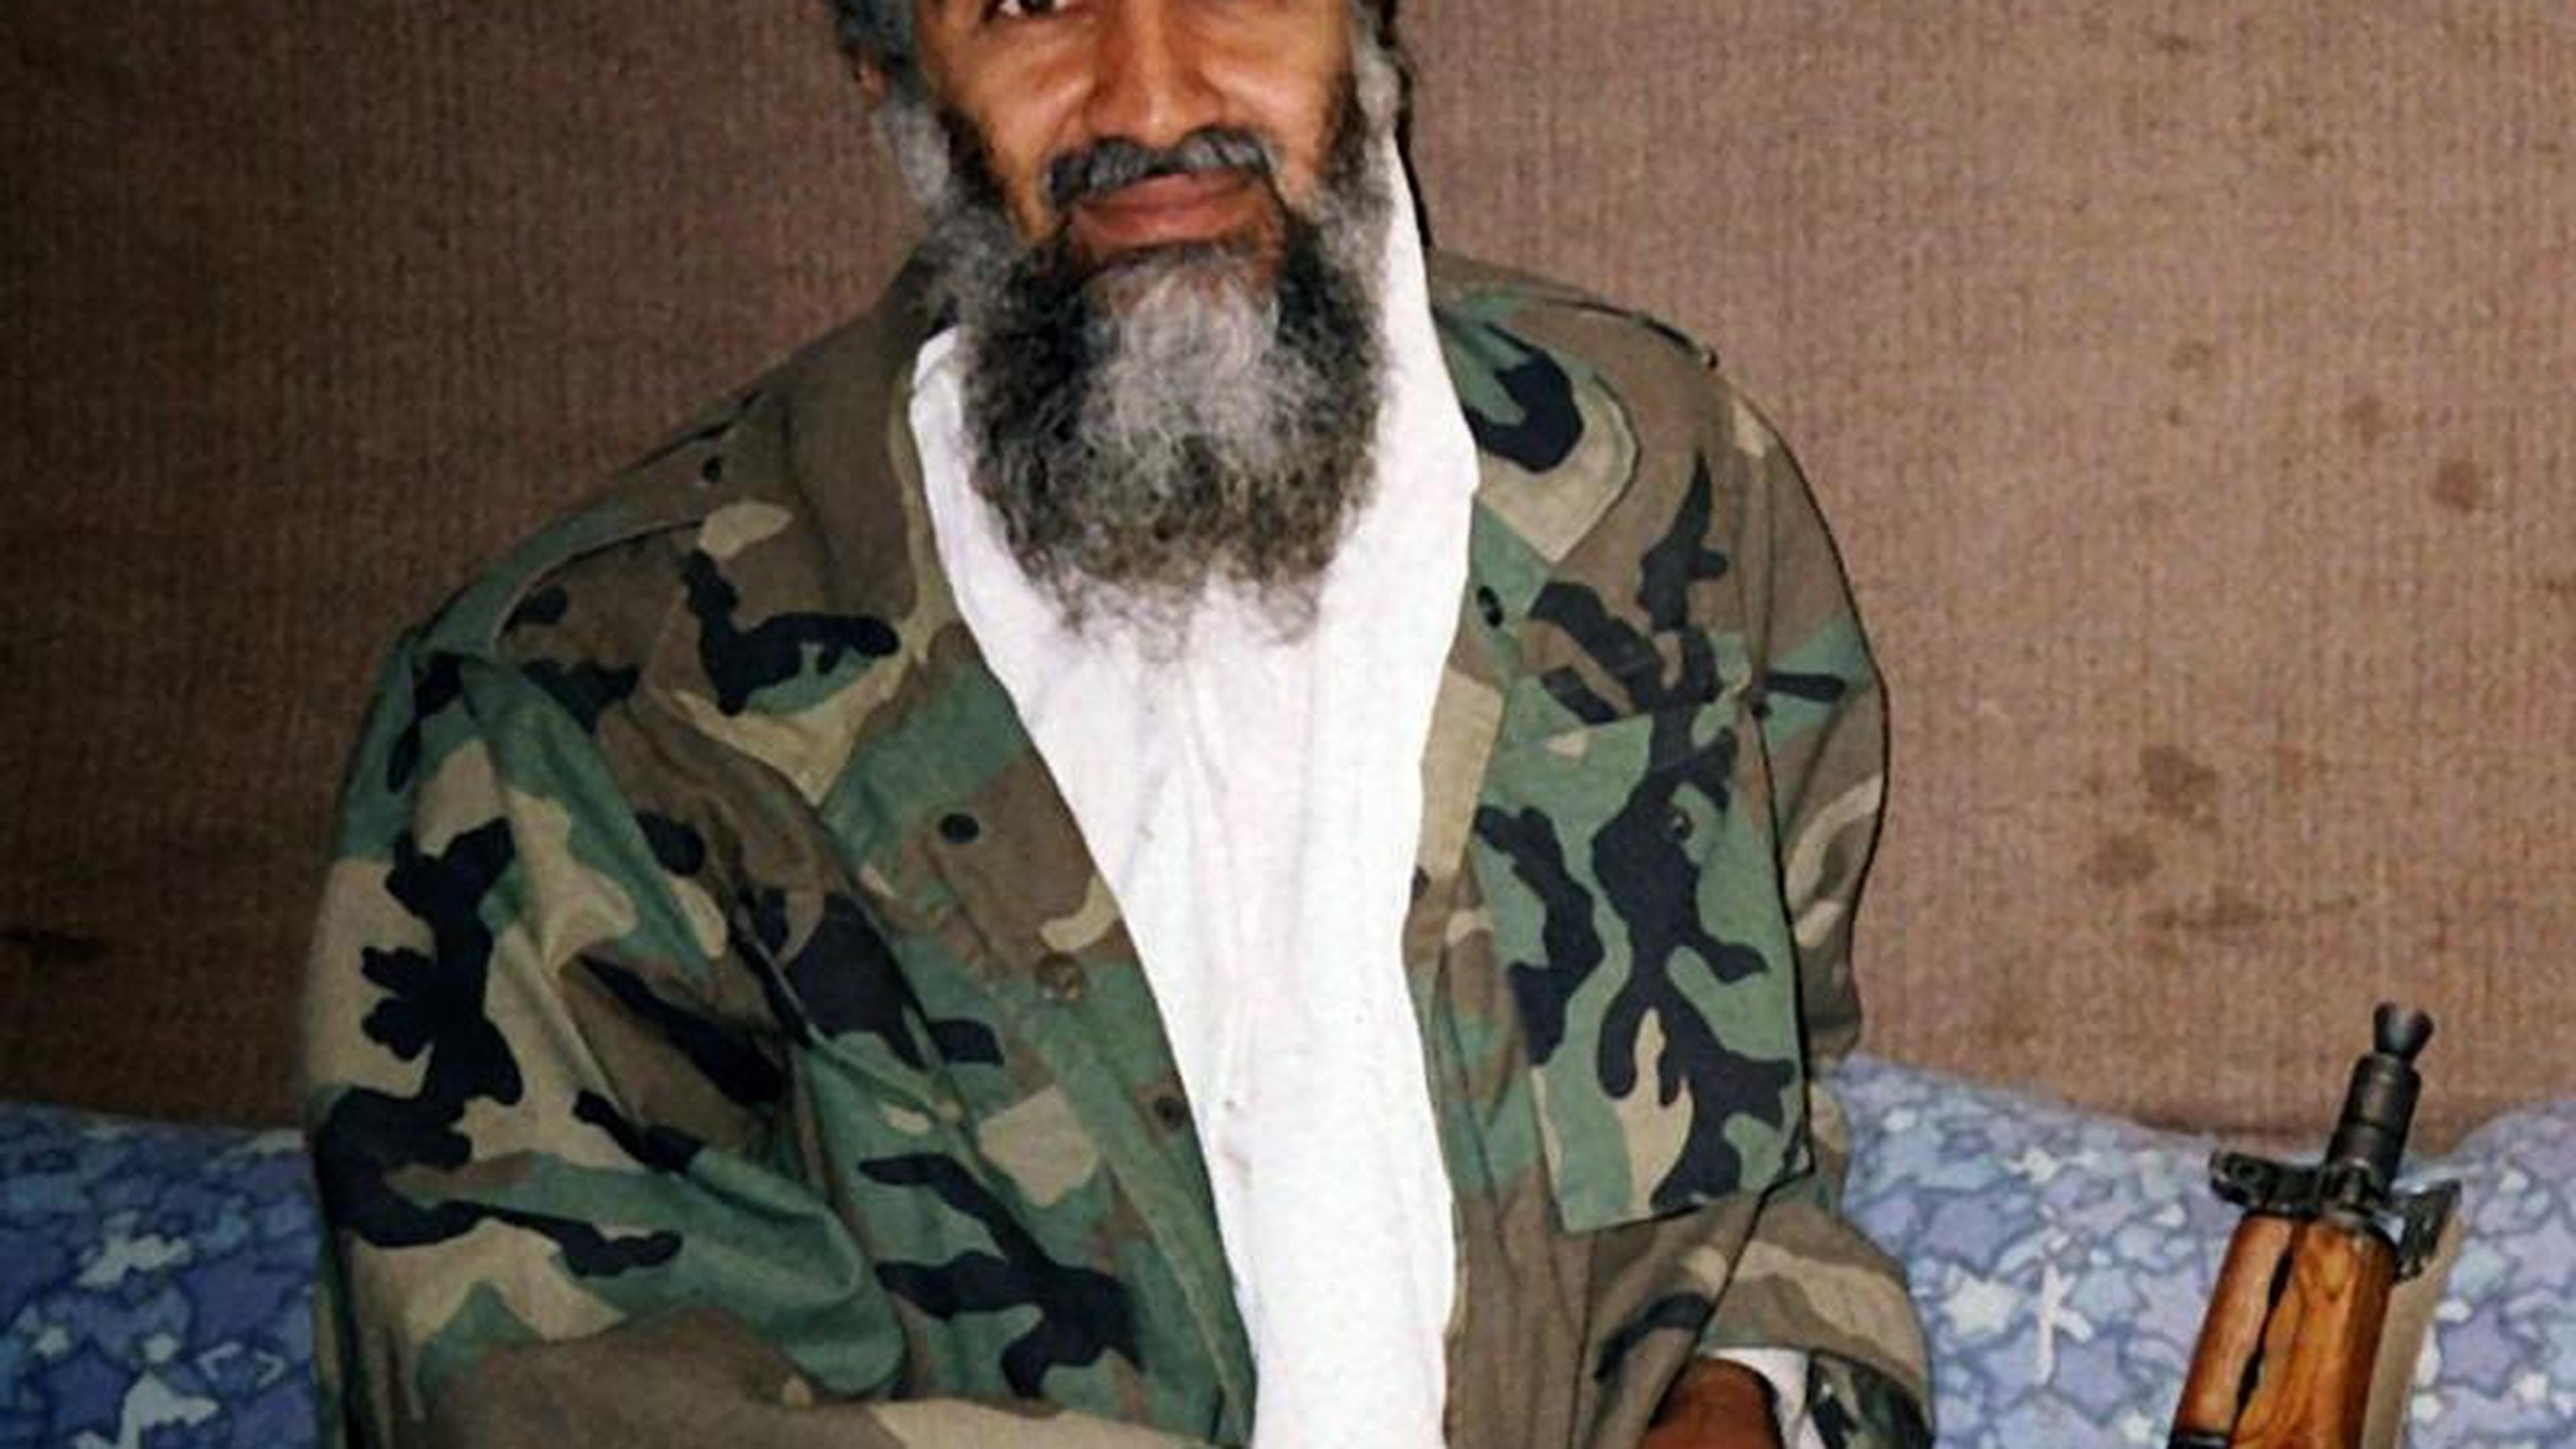 Terroristenführer Osama bin Laden in seinem Versteck in Afghanistan.